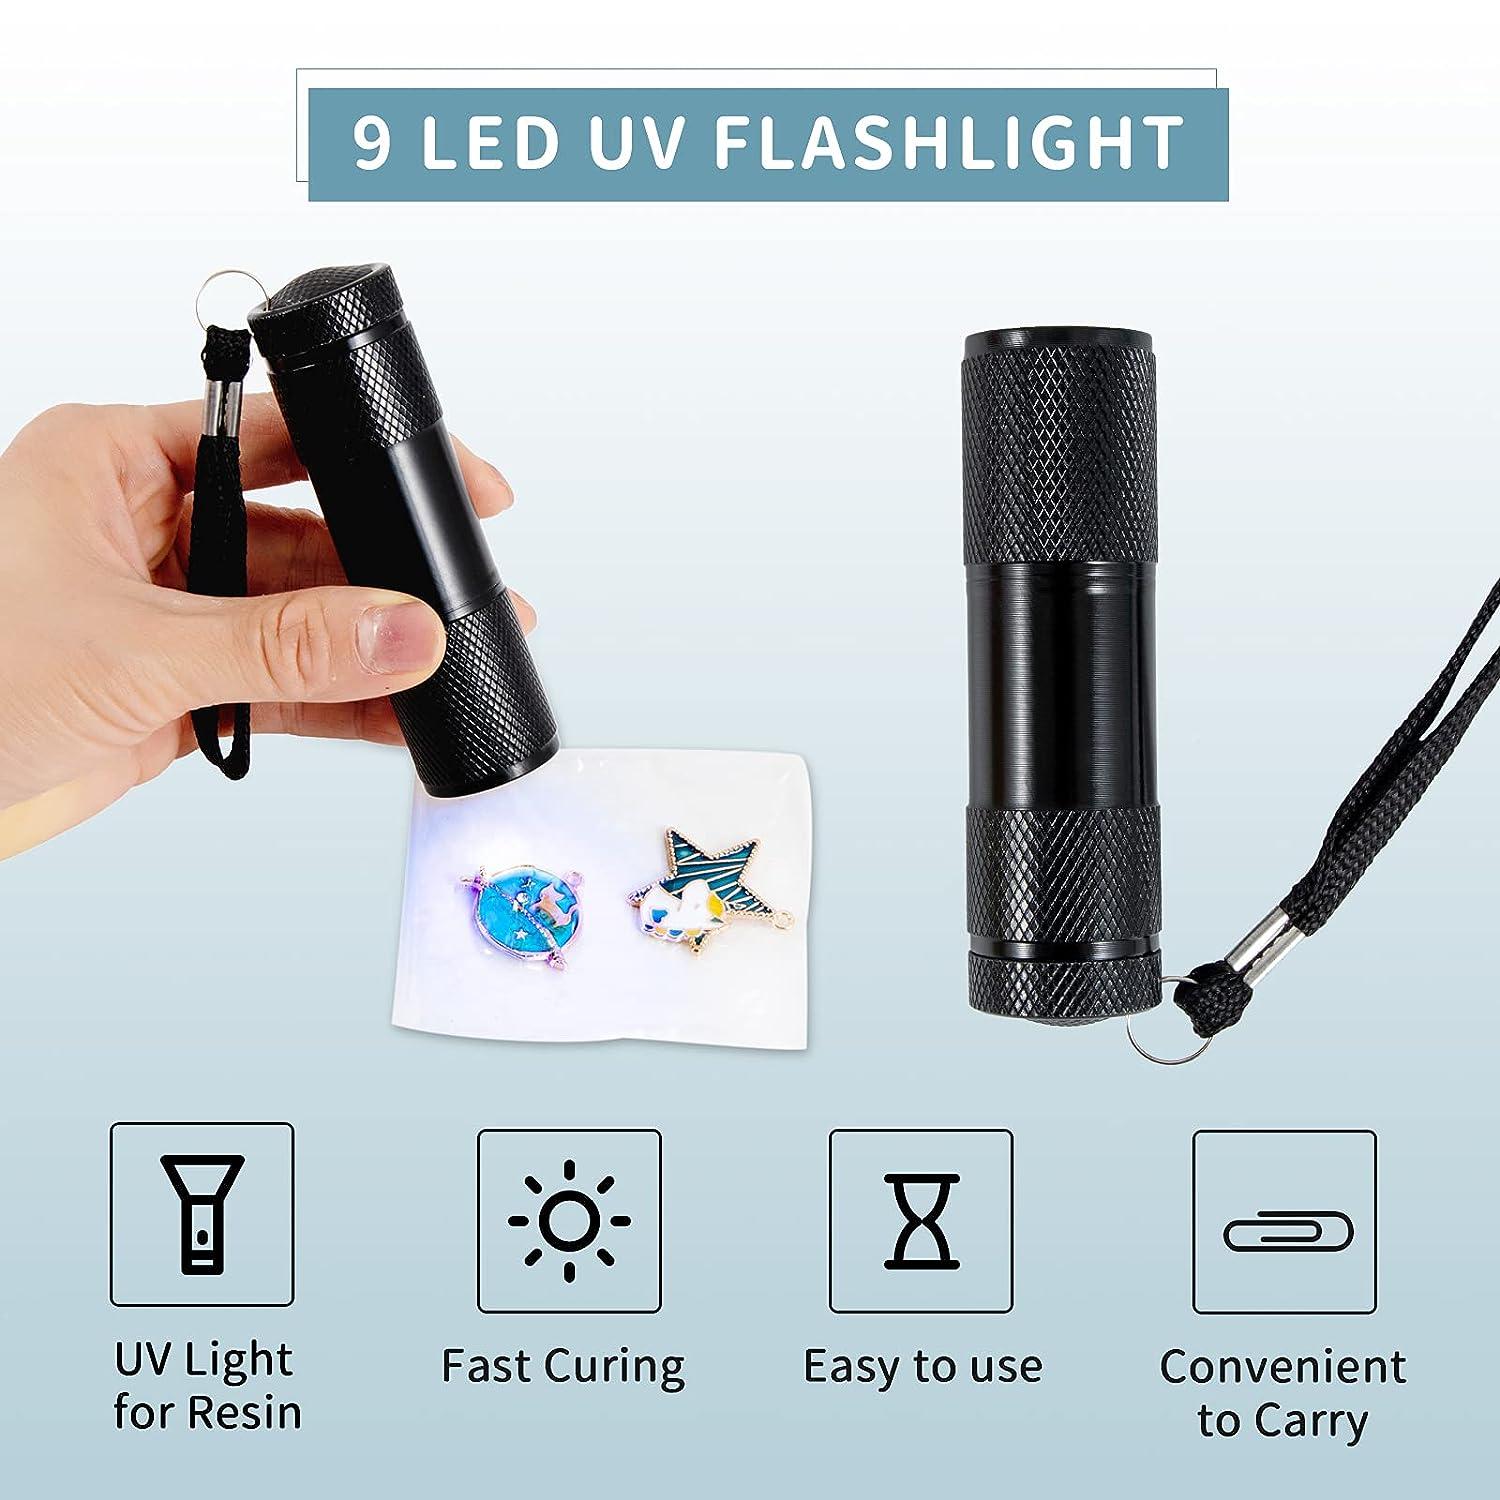 UV Resin kit with Light- 100g UV Resin Crystal Clear Resin Glue UV